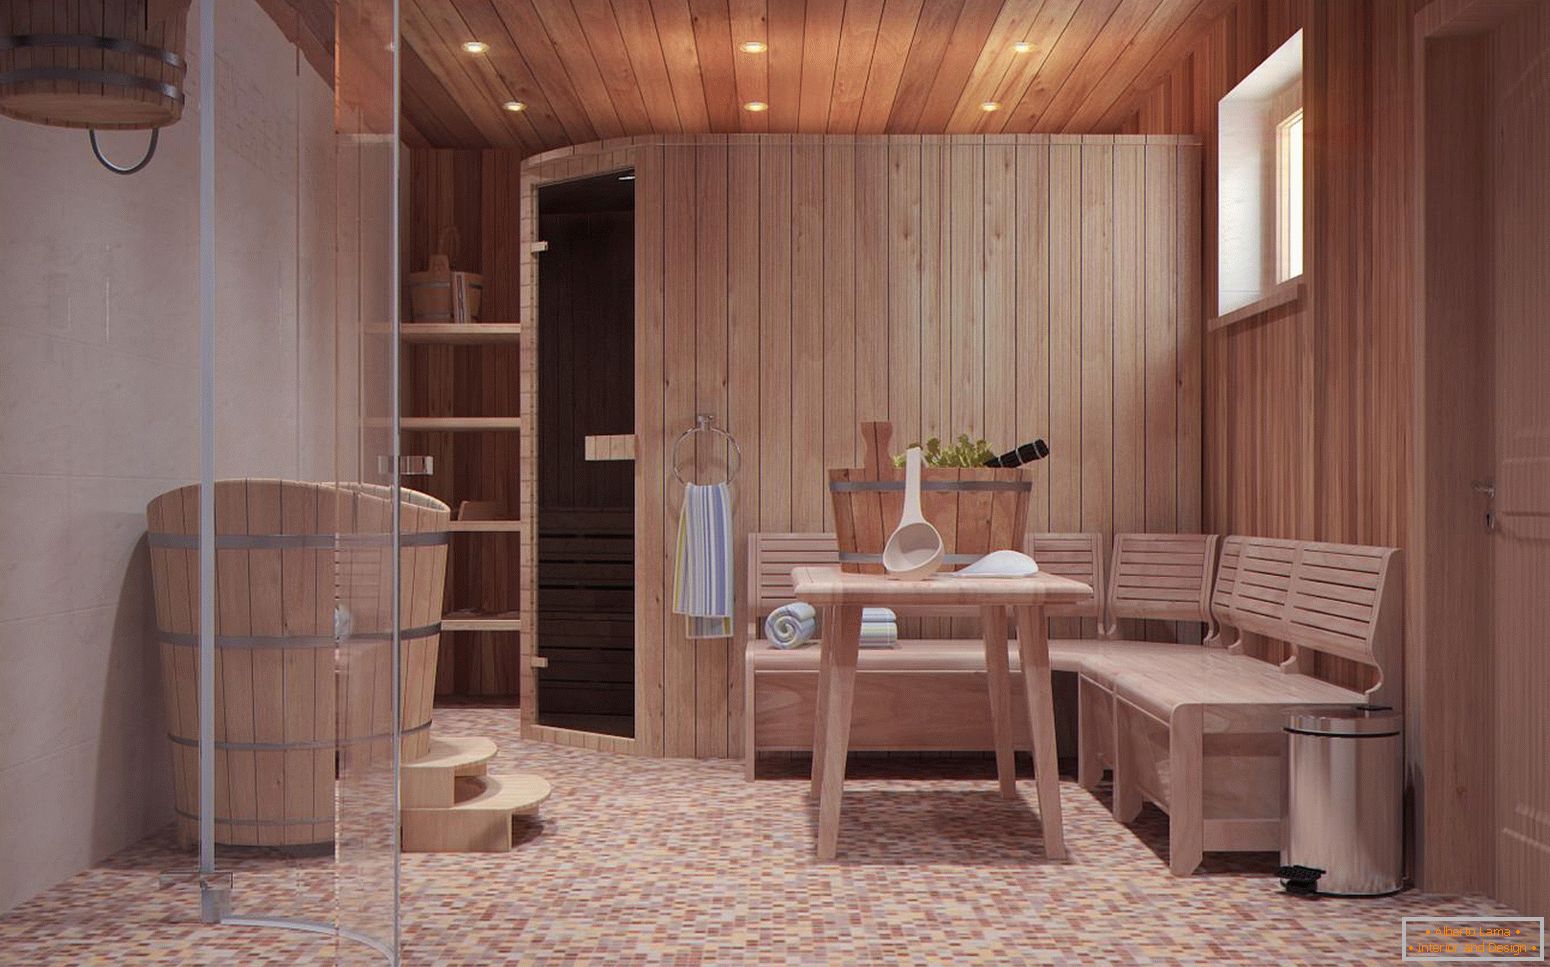 O cameră de relaxare într-o baie în stil scandinav